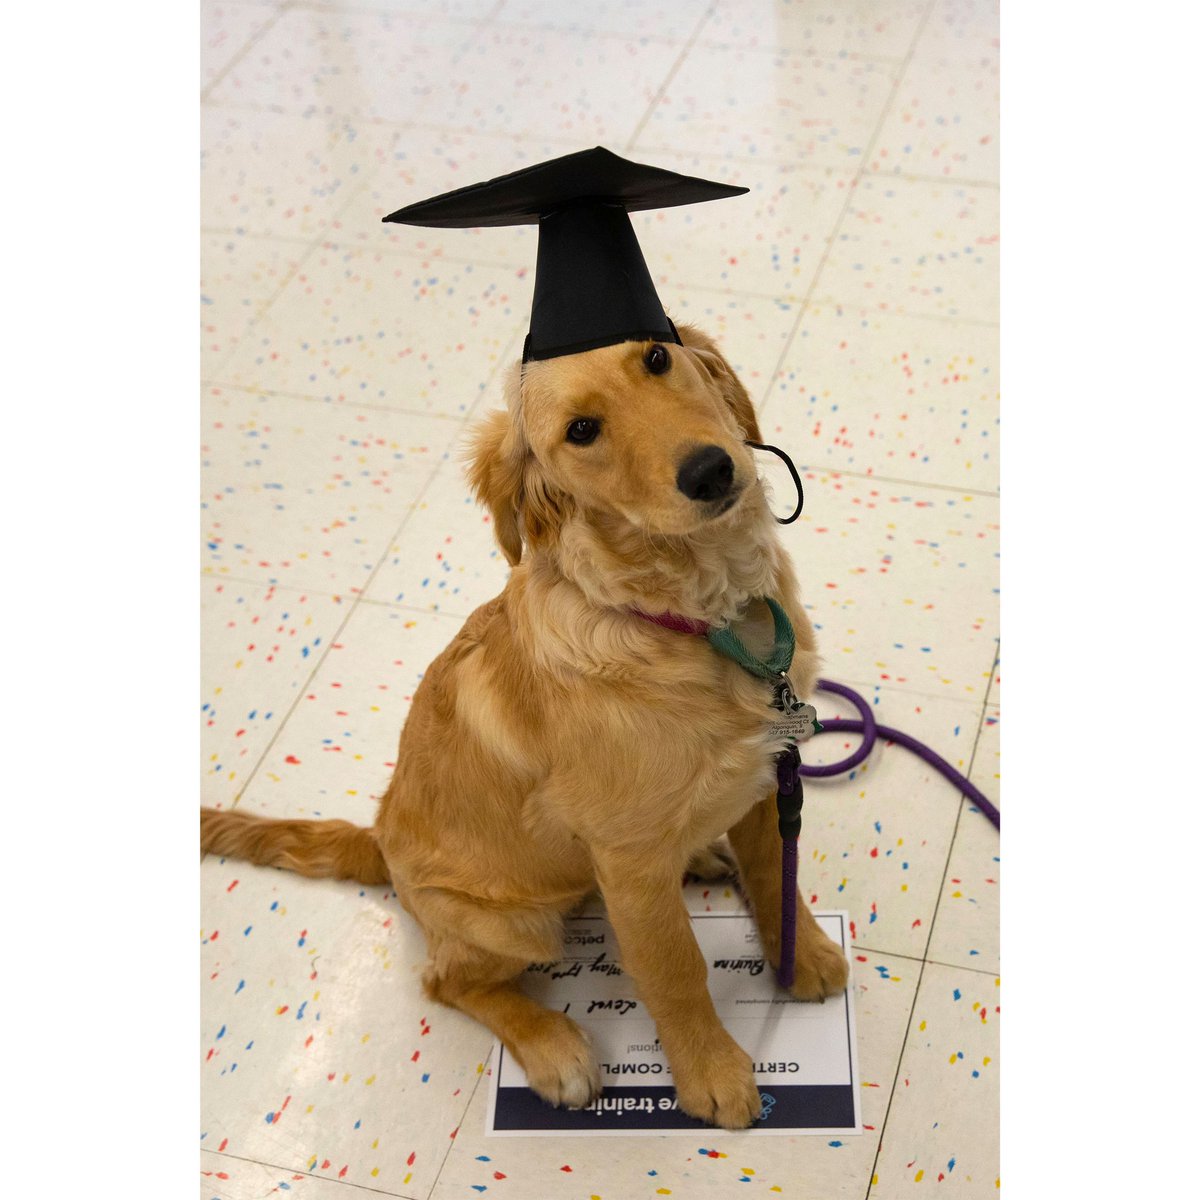 Golden retriever Cali graduates puppy school at Petco under the teaching of Antonella. #petco #goldenretriever #goldenpuppy #puppyschool #ilovegoldens